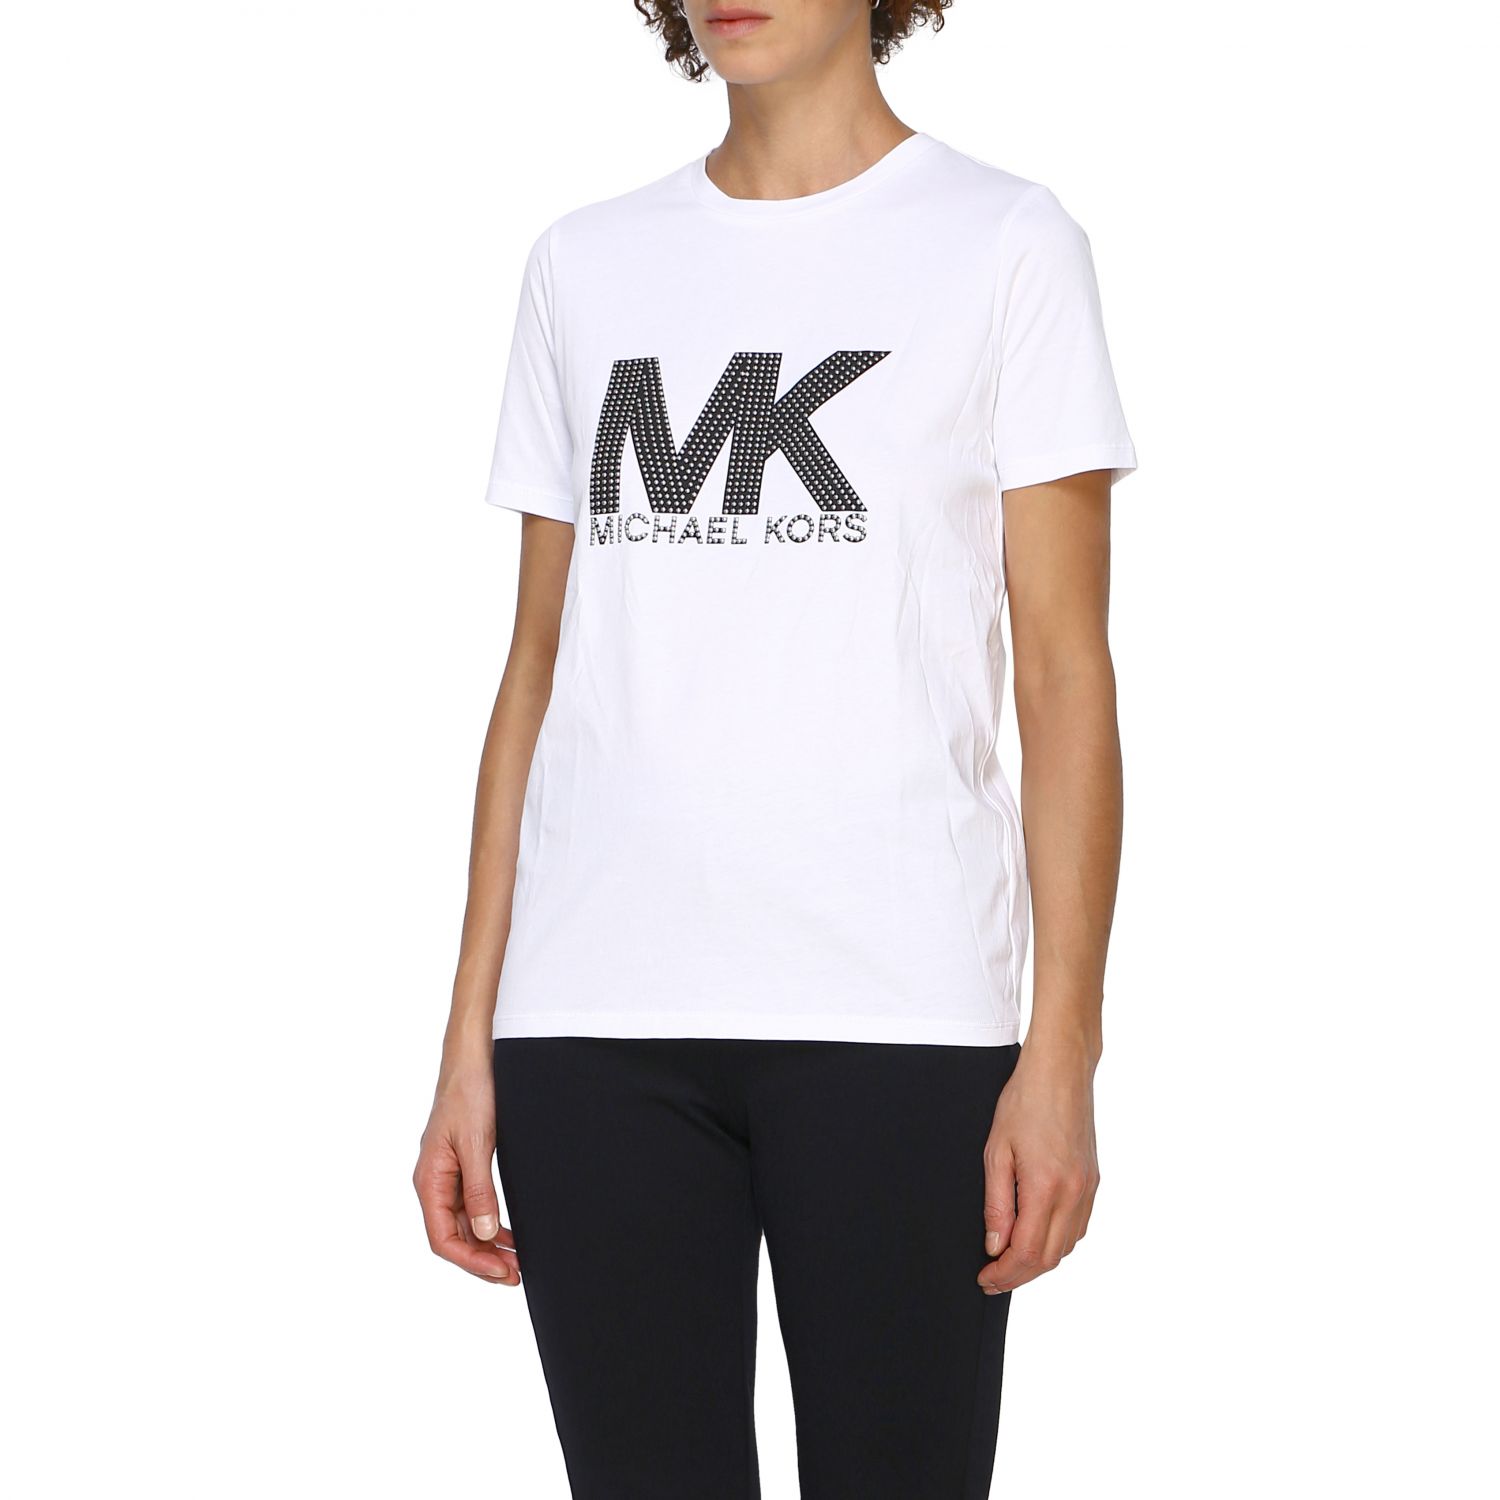 mk t shirt women's